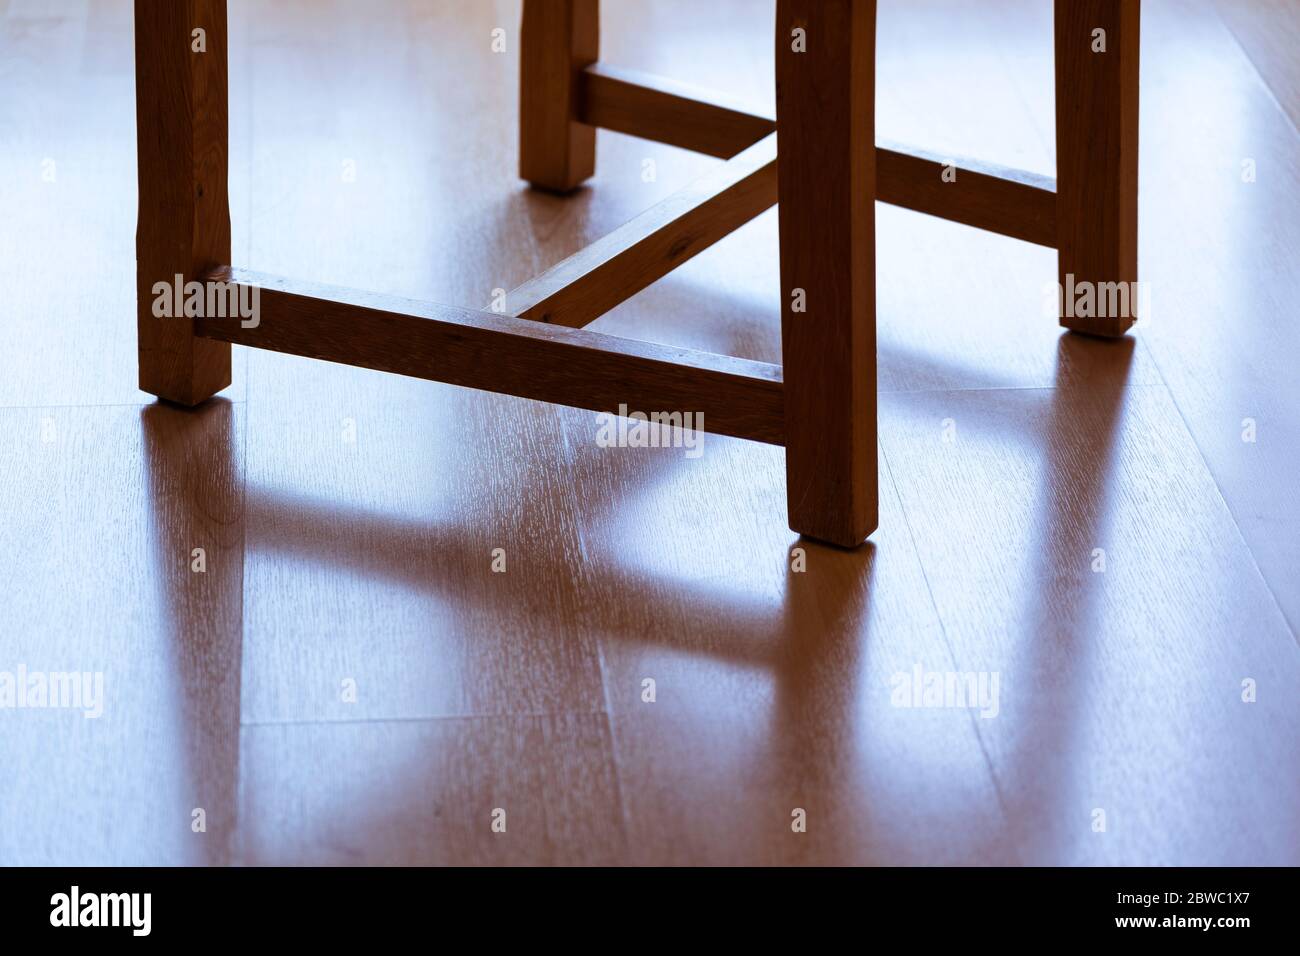 Der Schatten der Beine eines hinterleuchteten Esszimmers Holzstuhl reflektiert auf einem Laminat-Holzboden Stockfoto